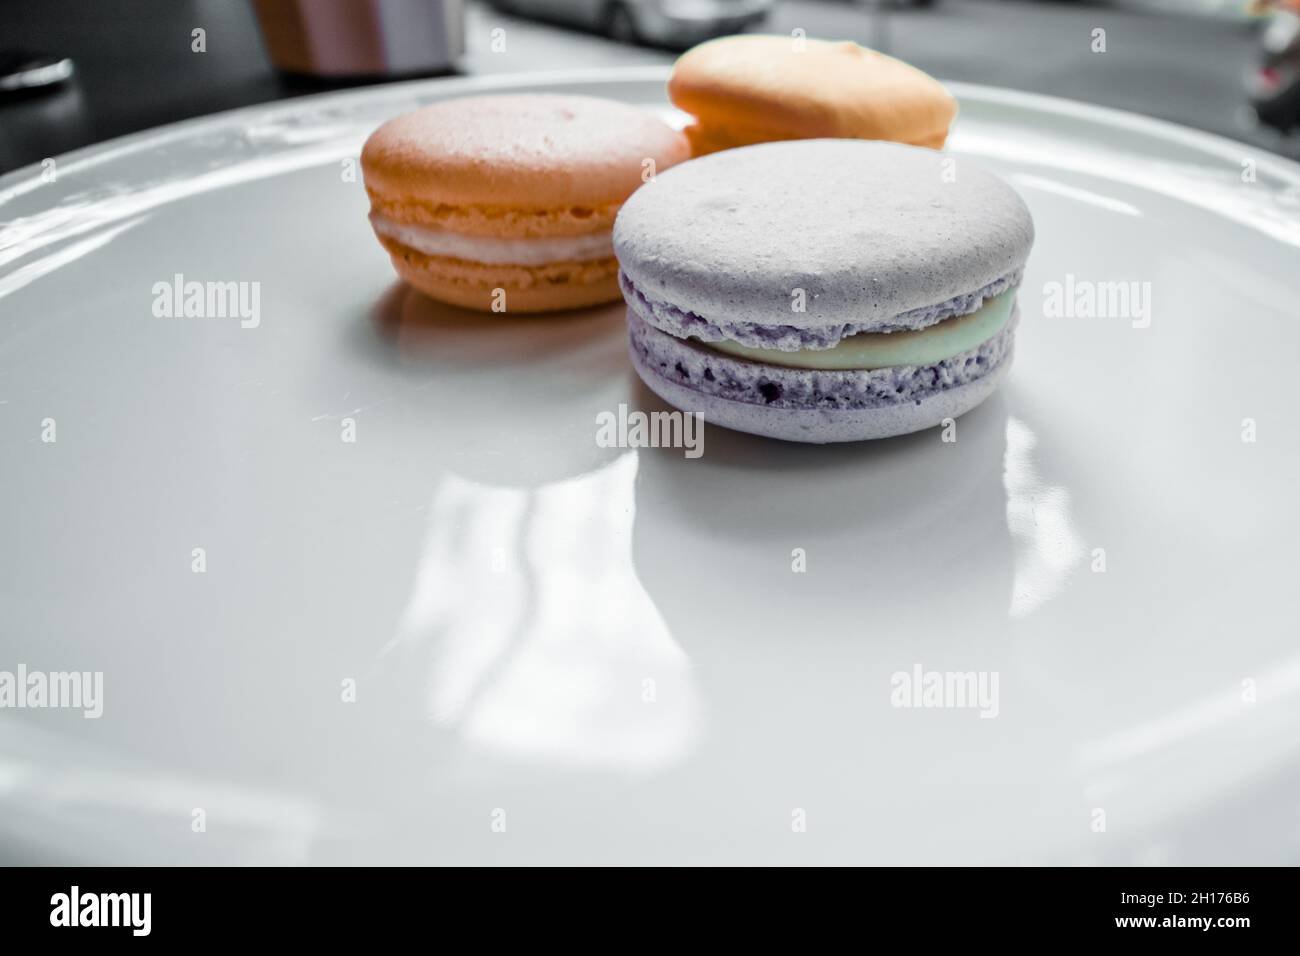 Des macarons de différentes couleurs se trouvent sur une grande assiette blanche plate. Banque D'Images